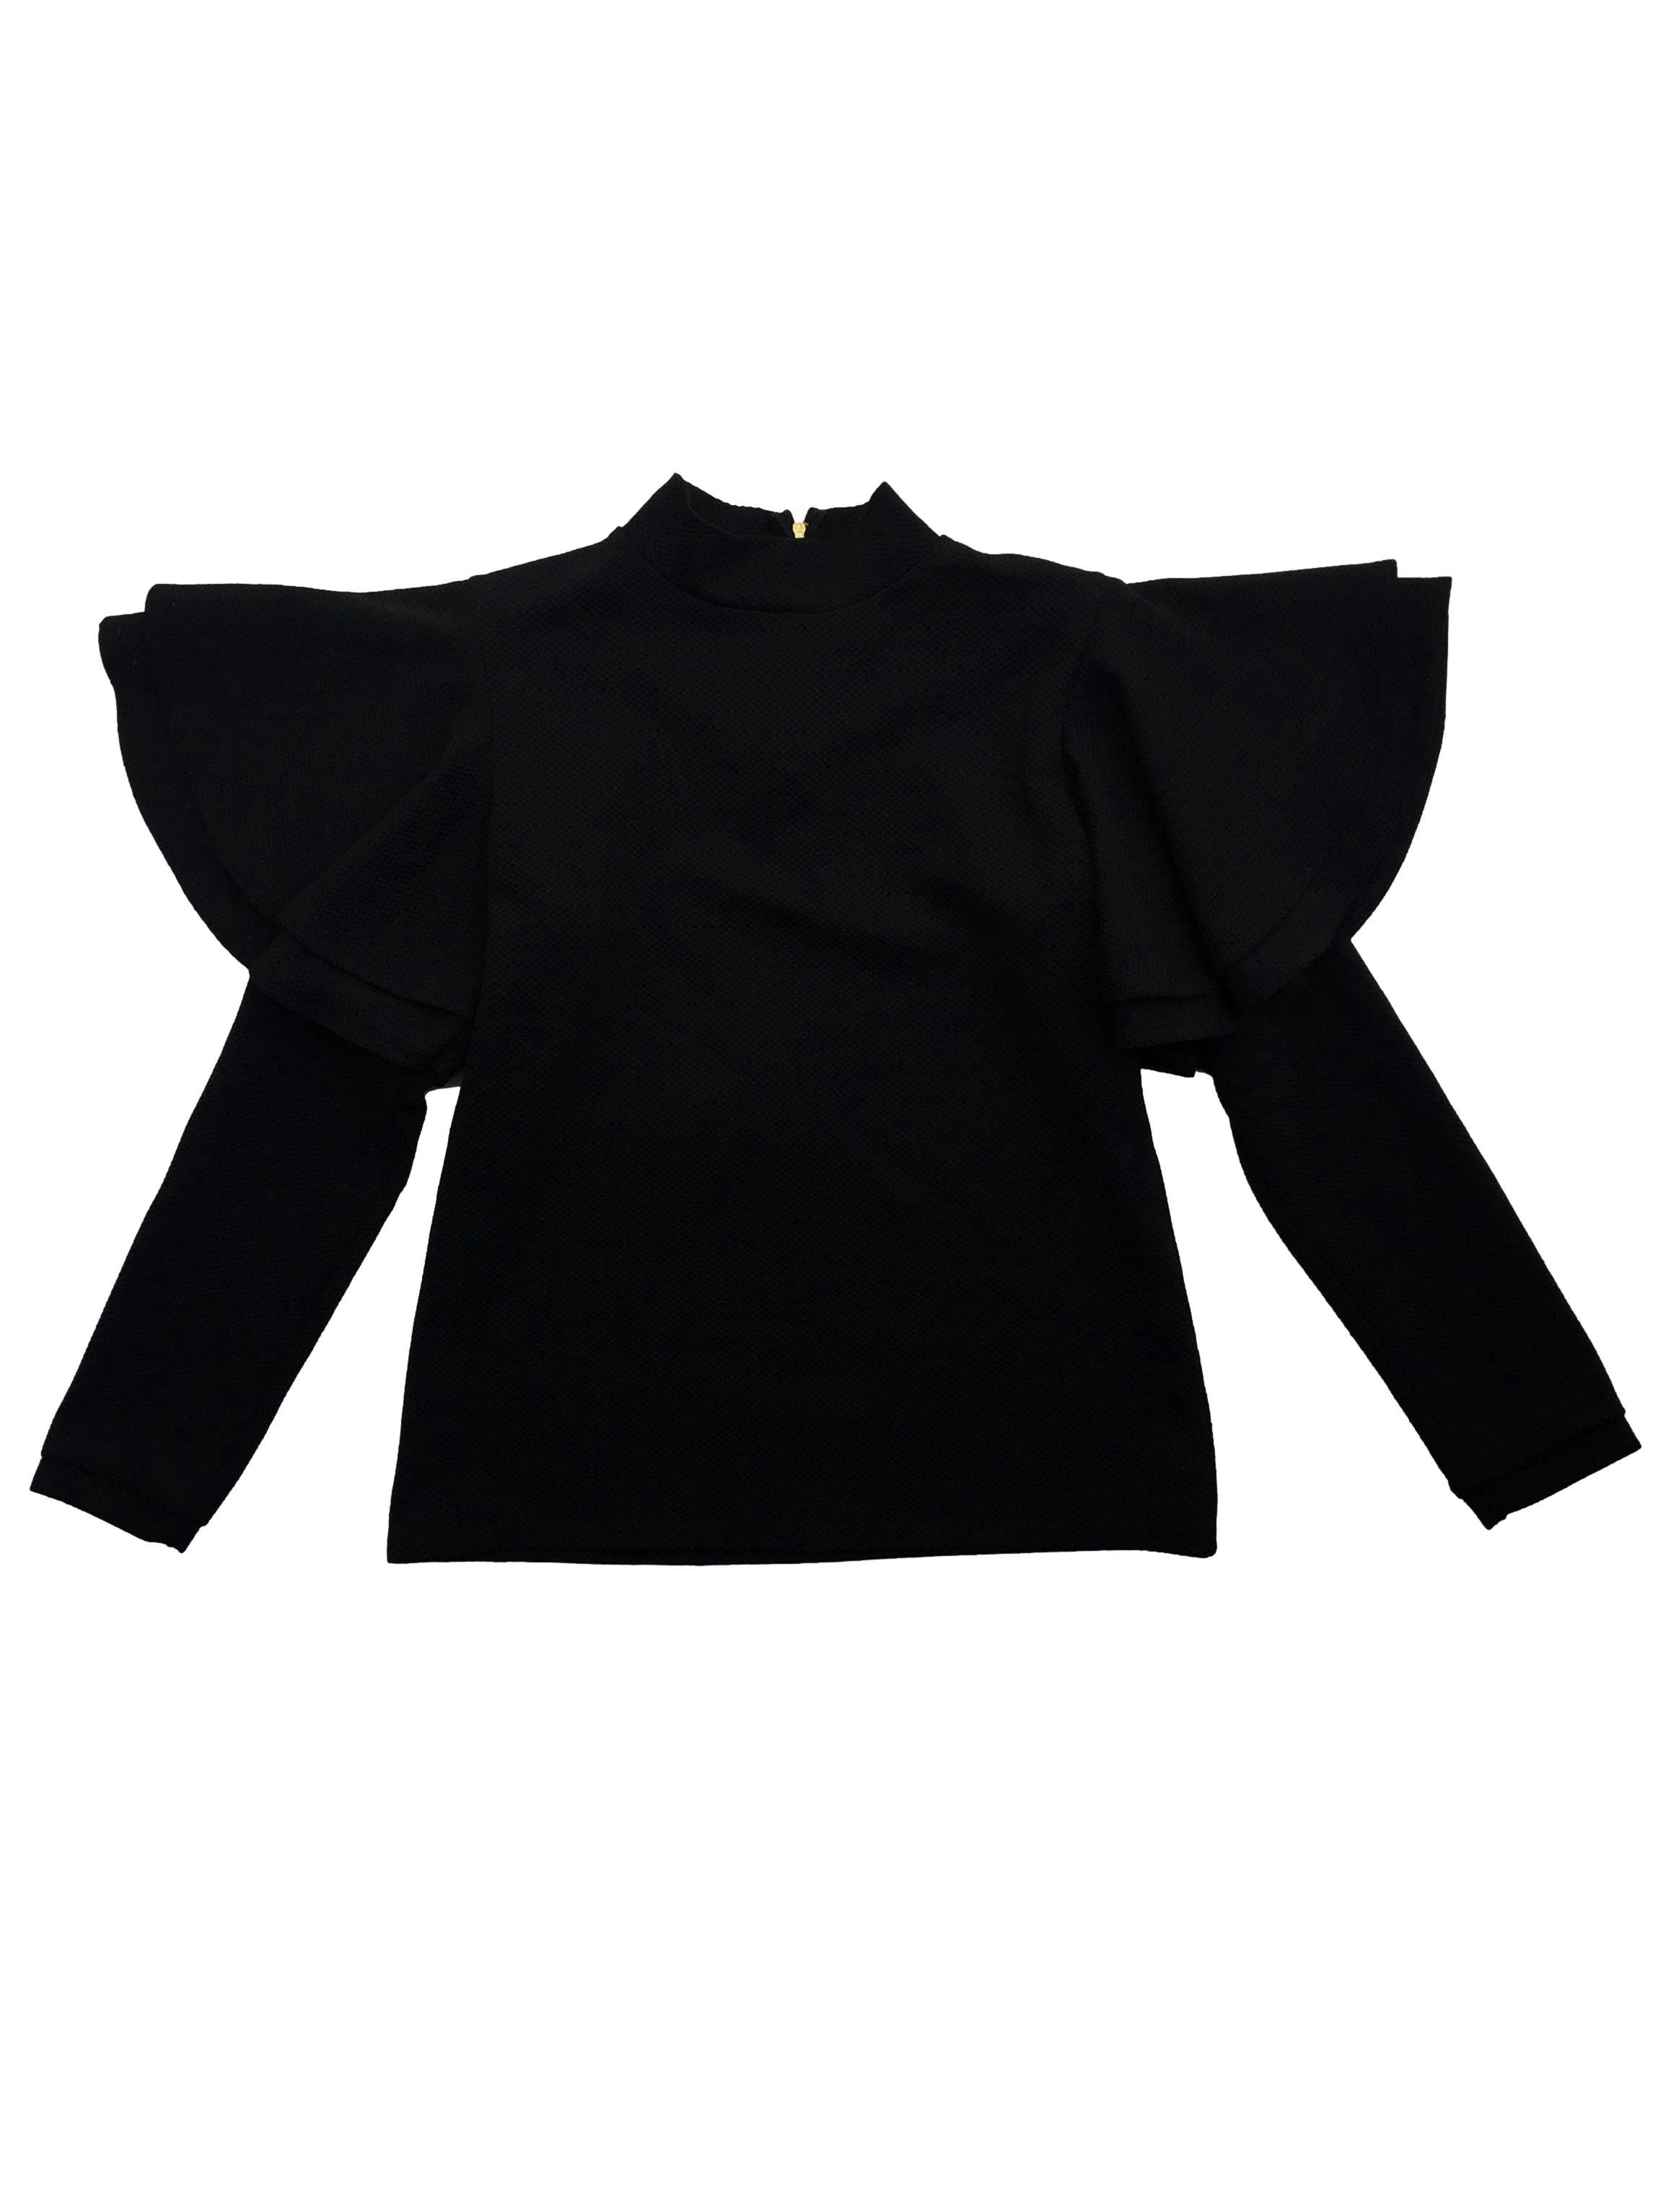 Blusa Malabar negra estructurada con volantes en hombros y cierre en la espalda. Busto 92cm Largo 57cm